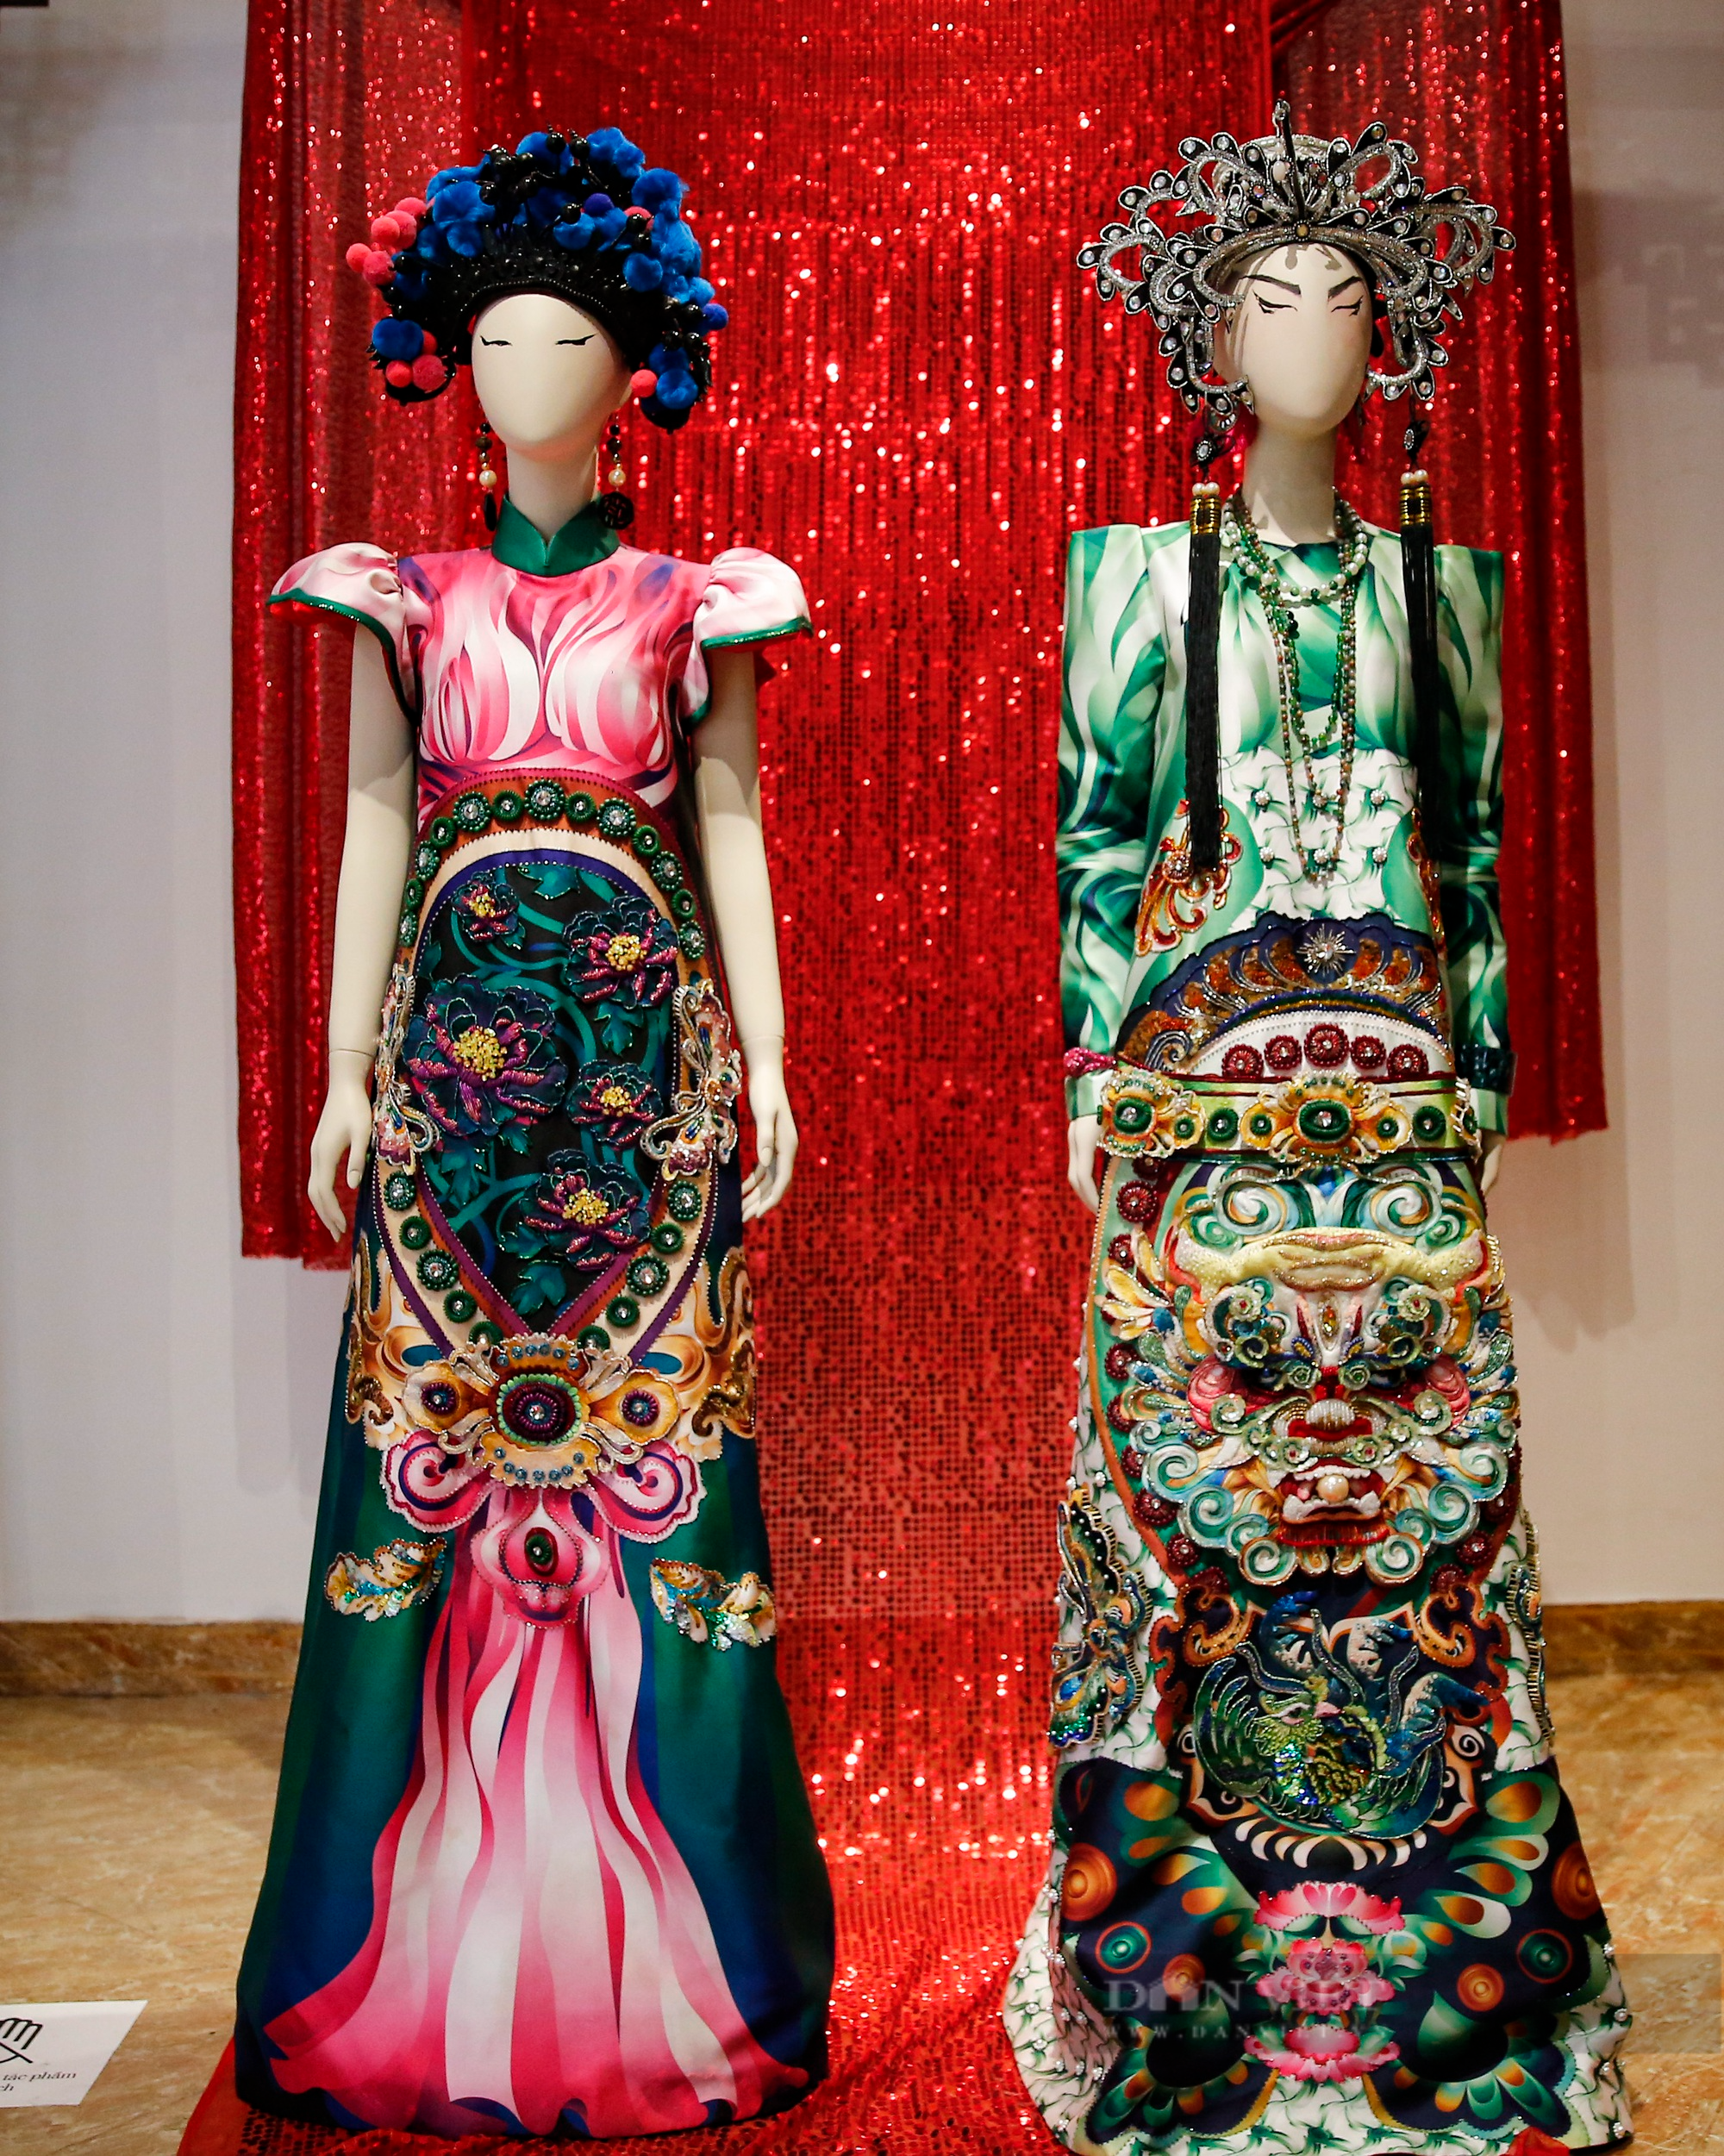 Bộ sưu tập áo dài đặc biệt của người phụ nữ có ảnh hưởng nhất Việt Nam do tạp chí Forbes bình chọn - Ảnh 4.